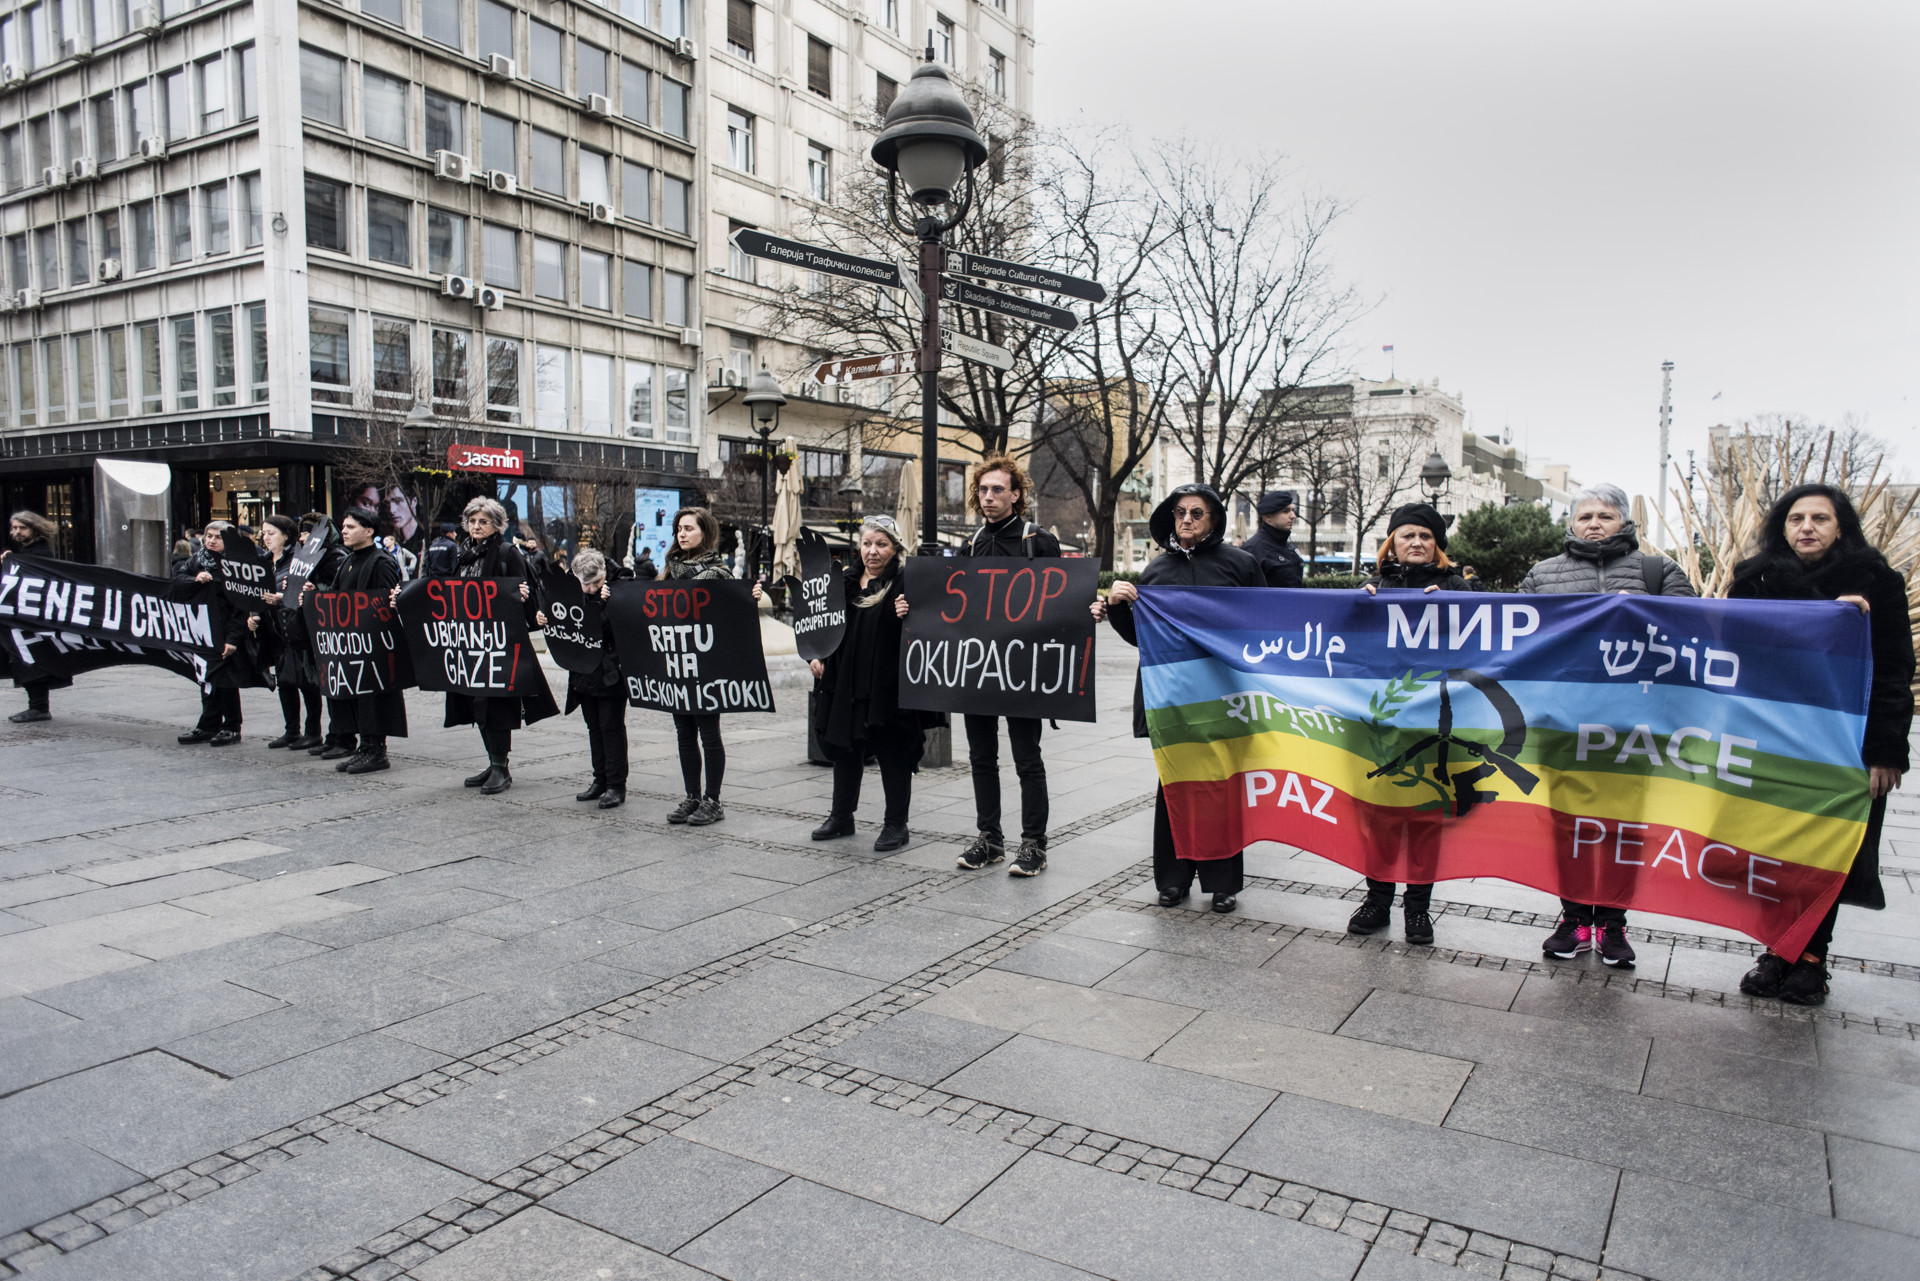 Stop ratu u Ukrajini! Stop ratu na Bliskom Istoku